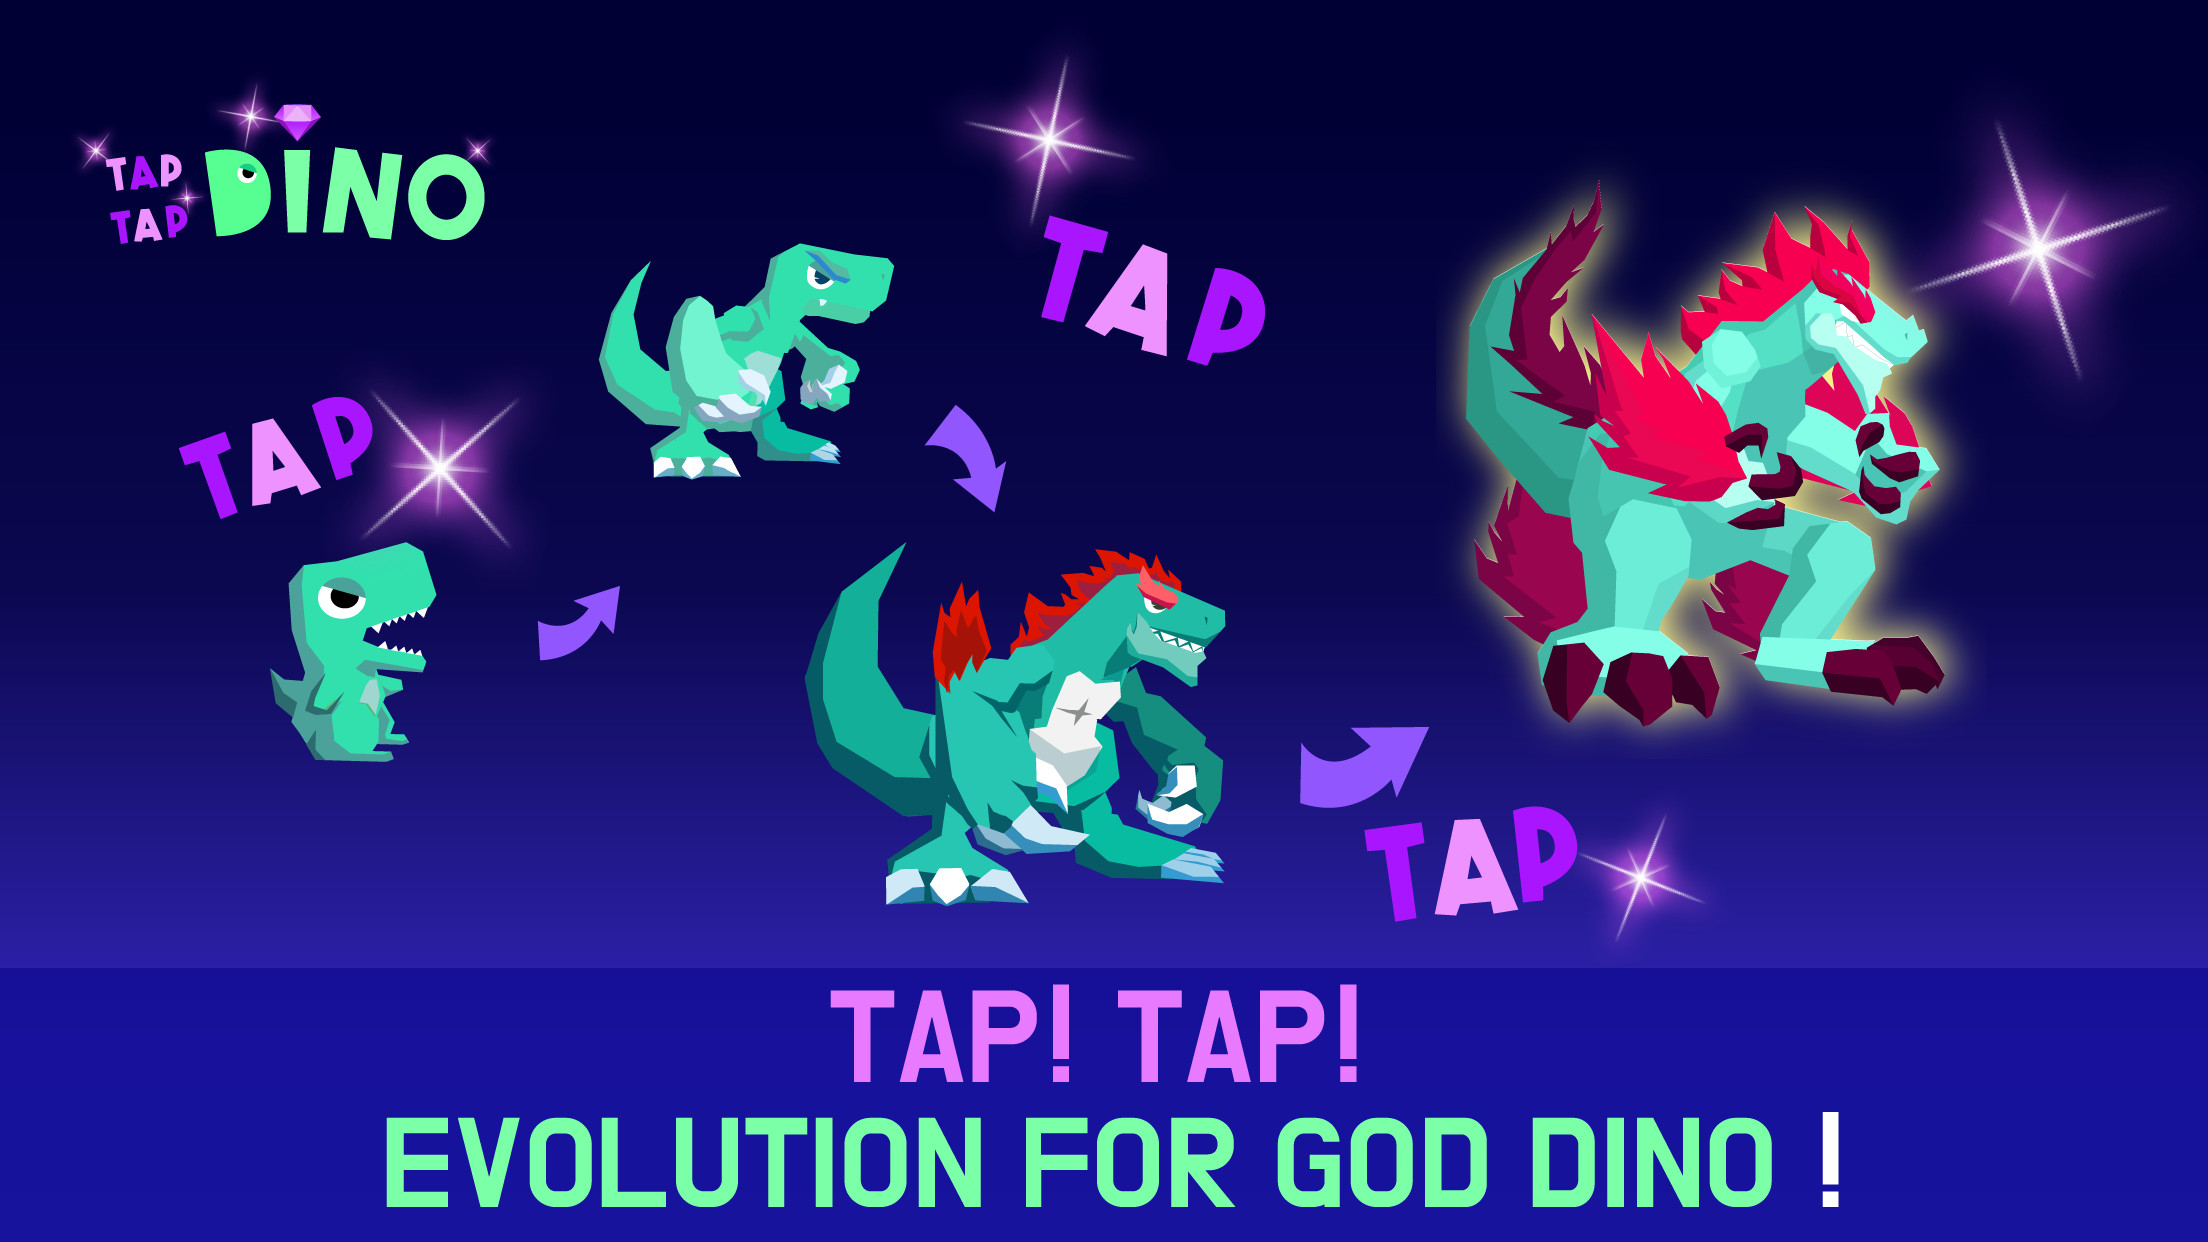 Screenshot 1 of I-tap ang Tapikin ang Dino : Dino Evolution 2.91